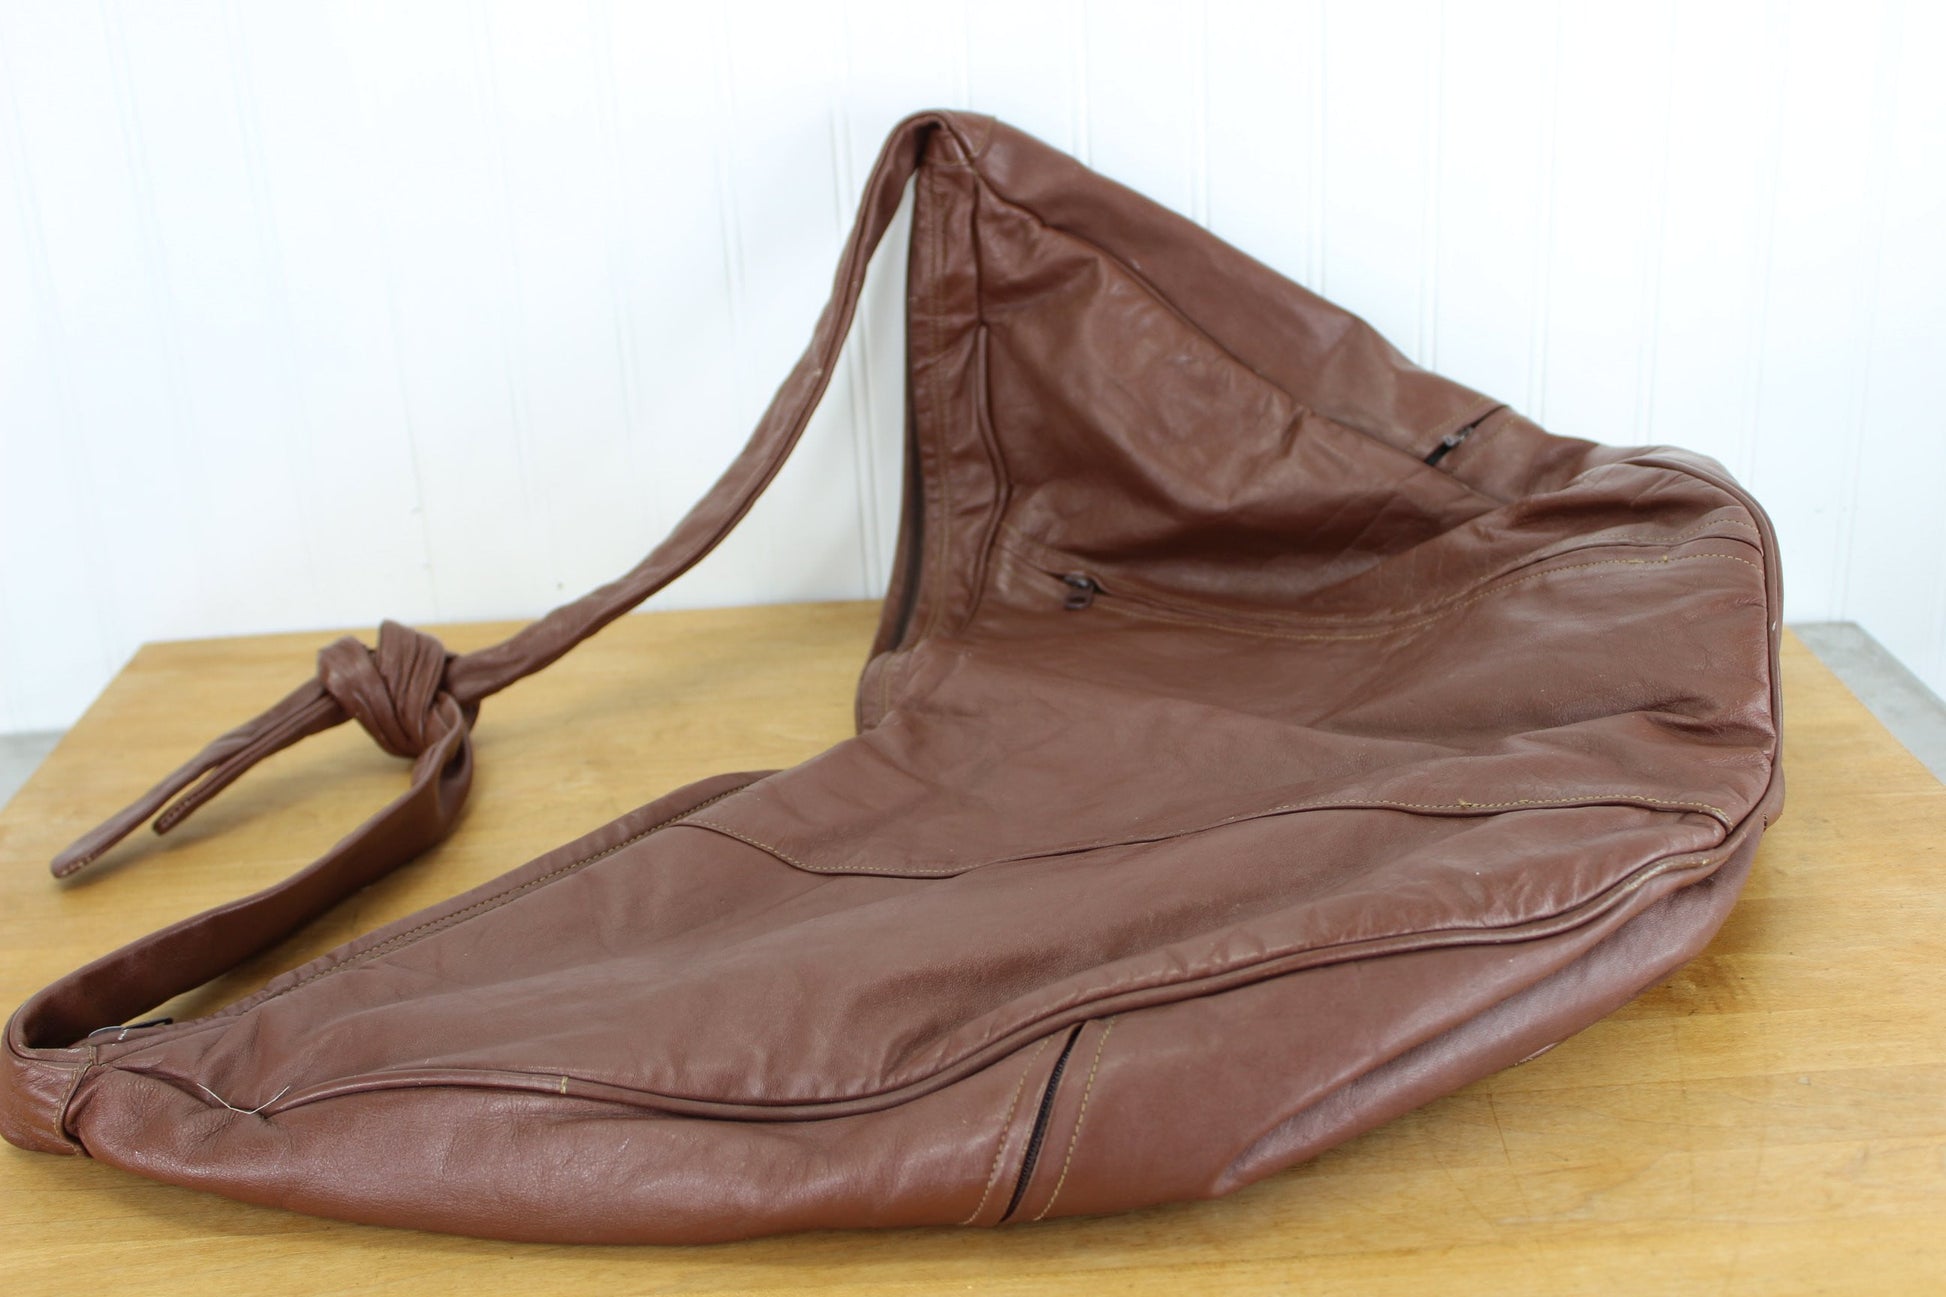 Flores Bags Leather Sling Shoulder Tote Carryall Bag - Tie Shoulder Handle - Extra Large  shopper